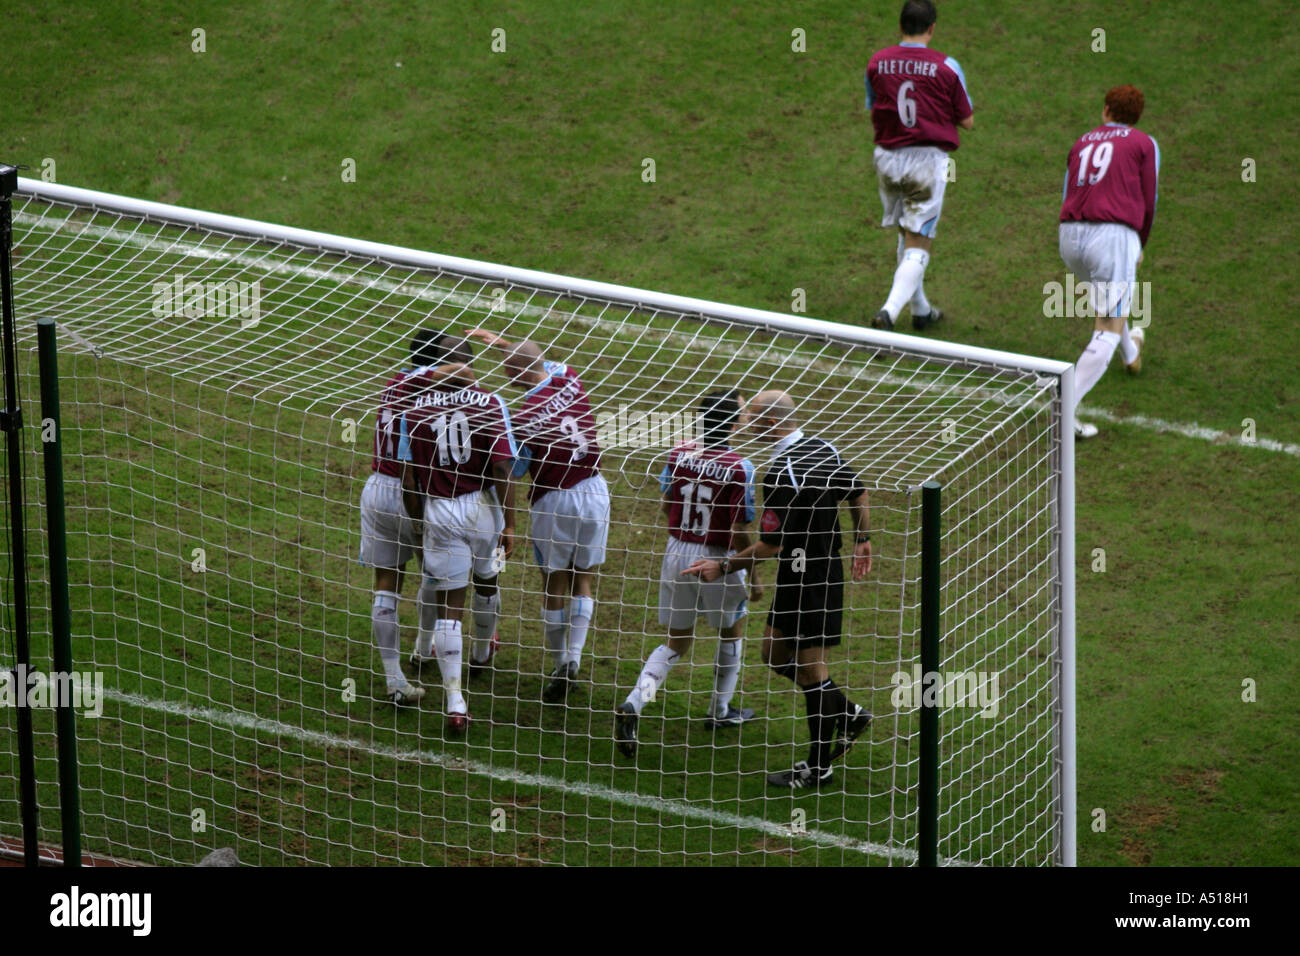 Marlon Harewood goal celebration West Ham v Chelsea Upton Park 2 January 2006 Stock Photo